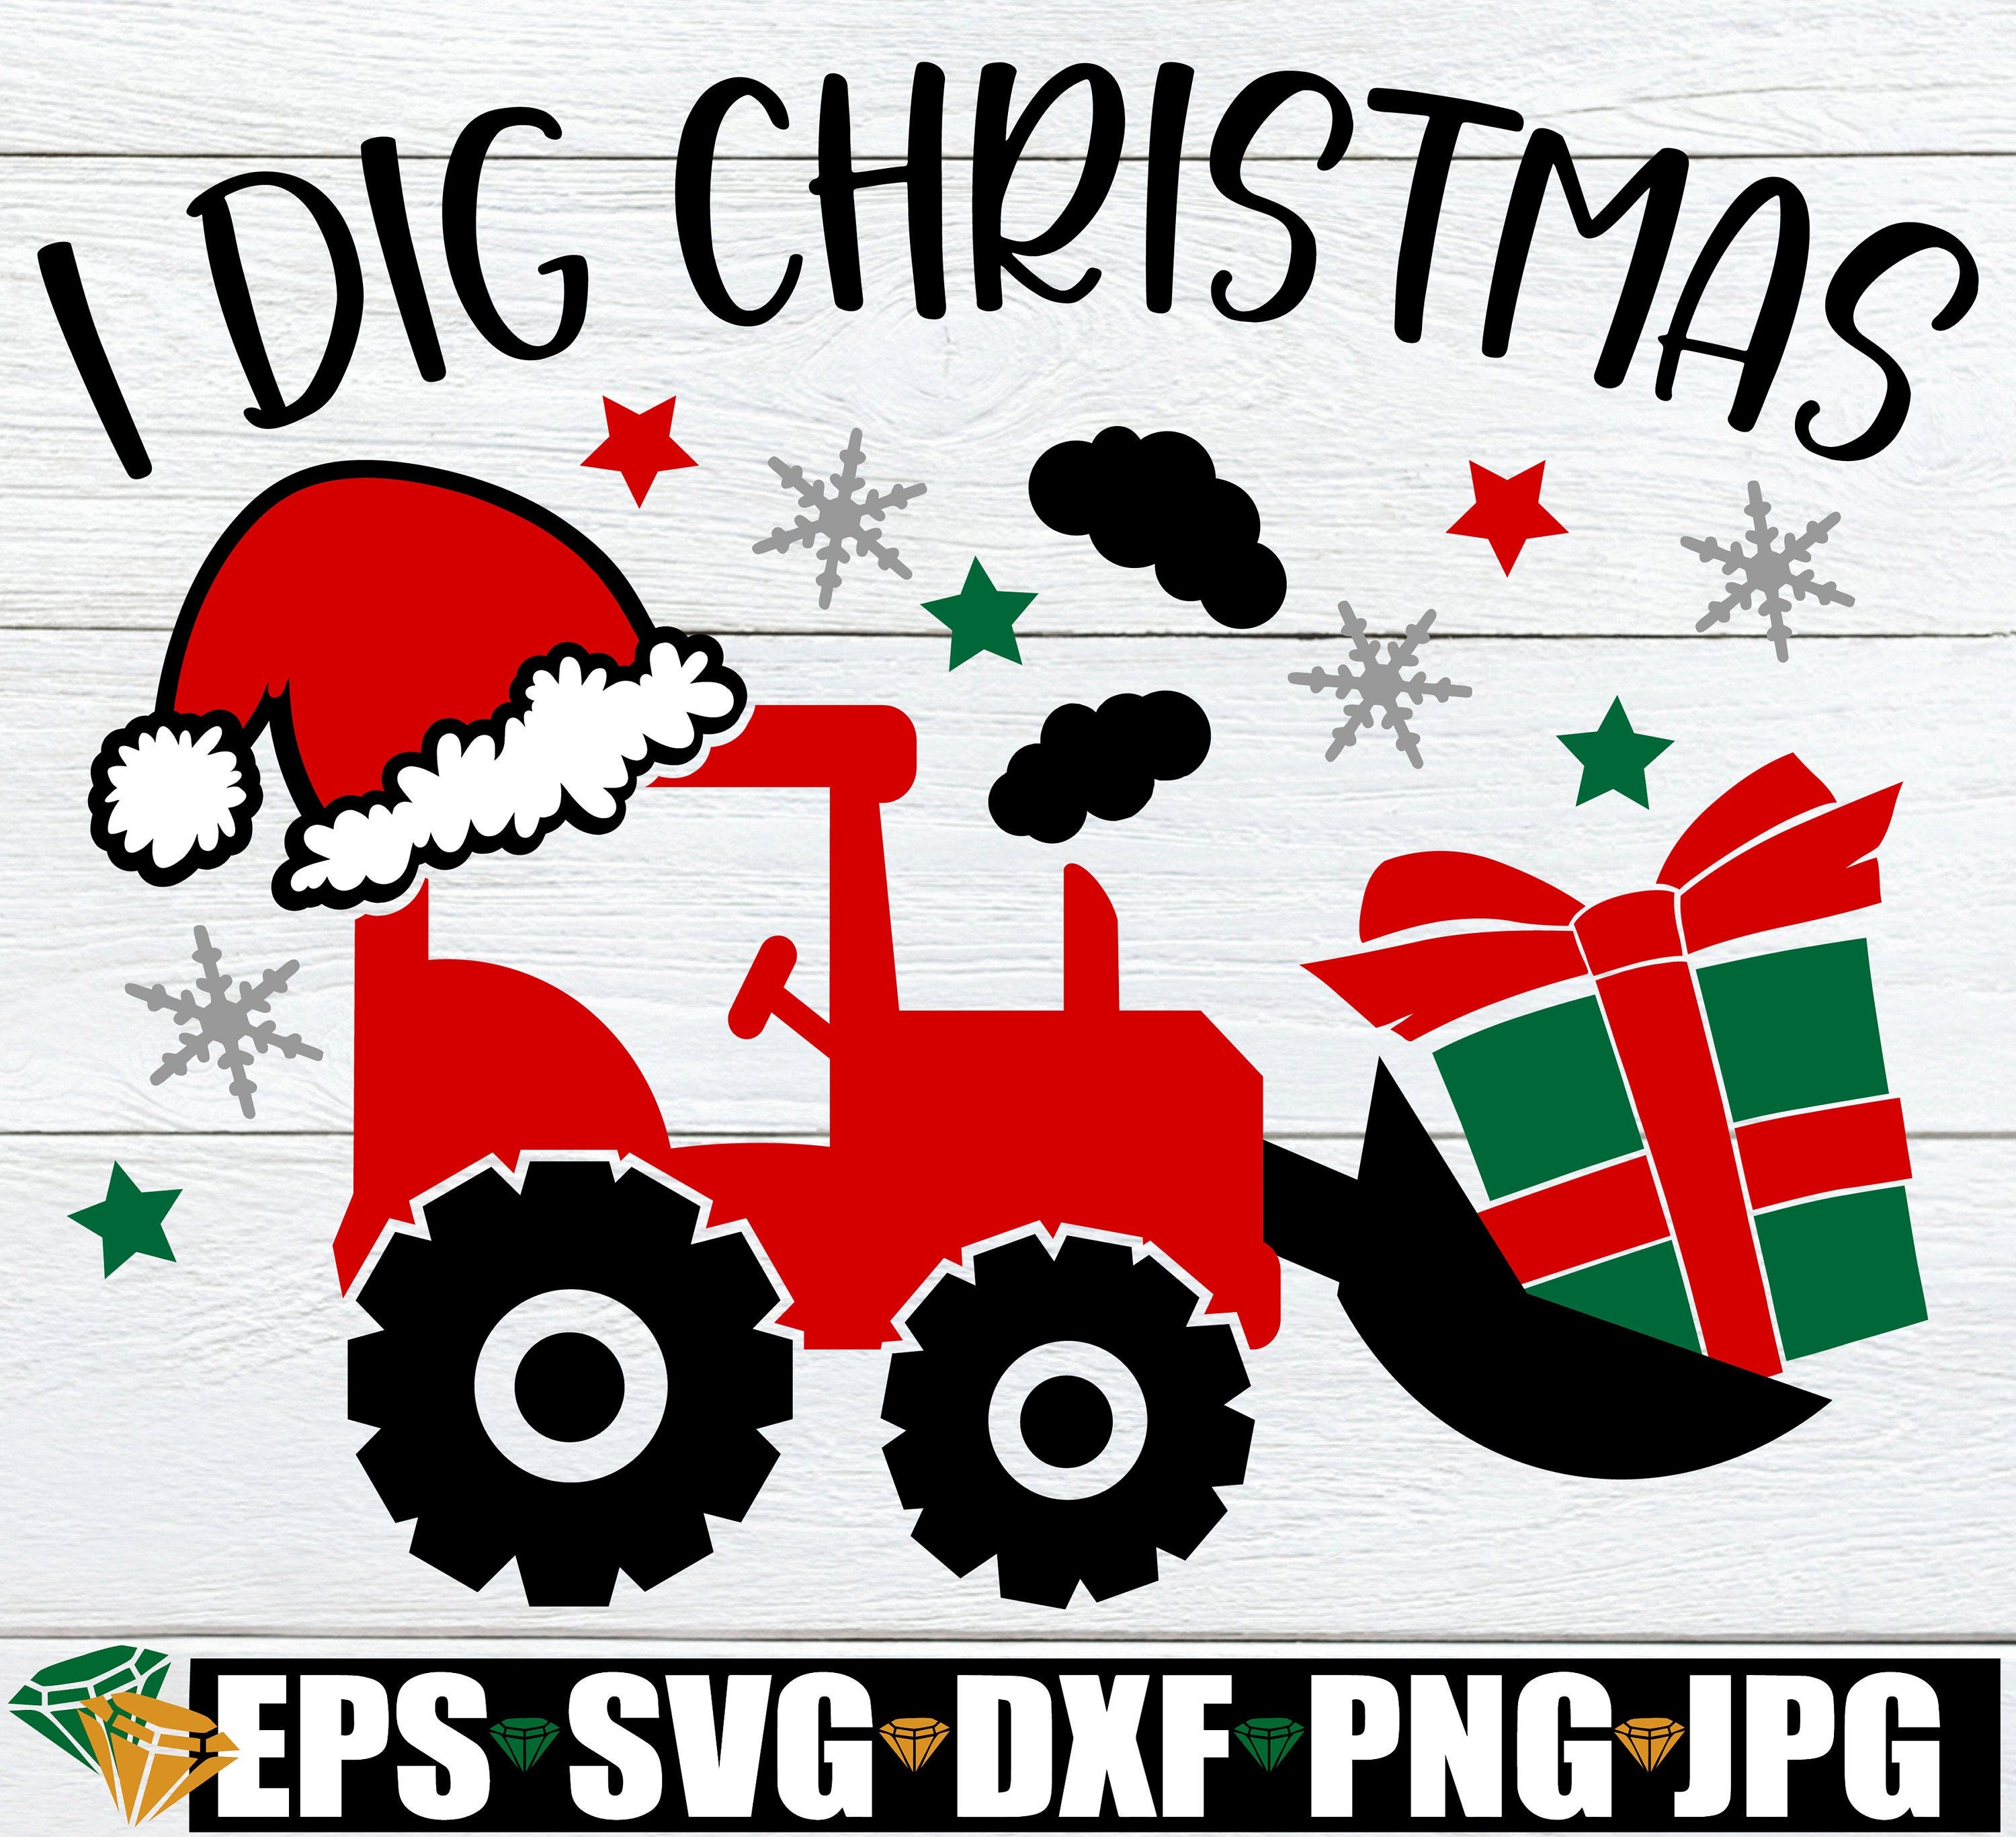 I Dig Christmas, Kids Christmas svg, Boy Christmas svg, Toddler Boy Christmas Shirt SVG, Funny Kids Christmas svg, Christmas SVG for Boy